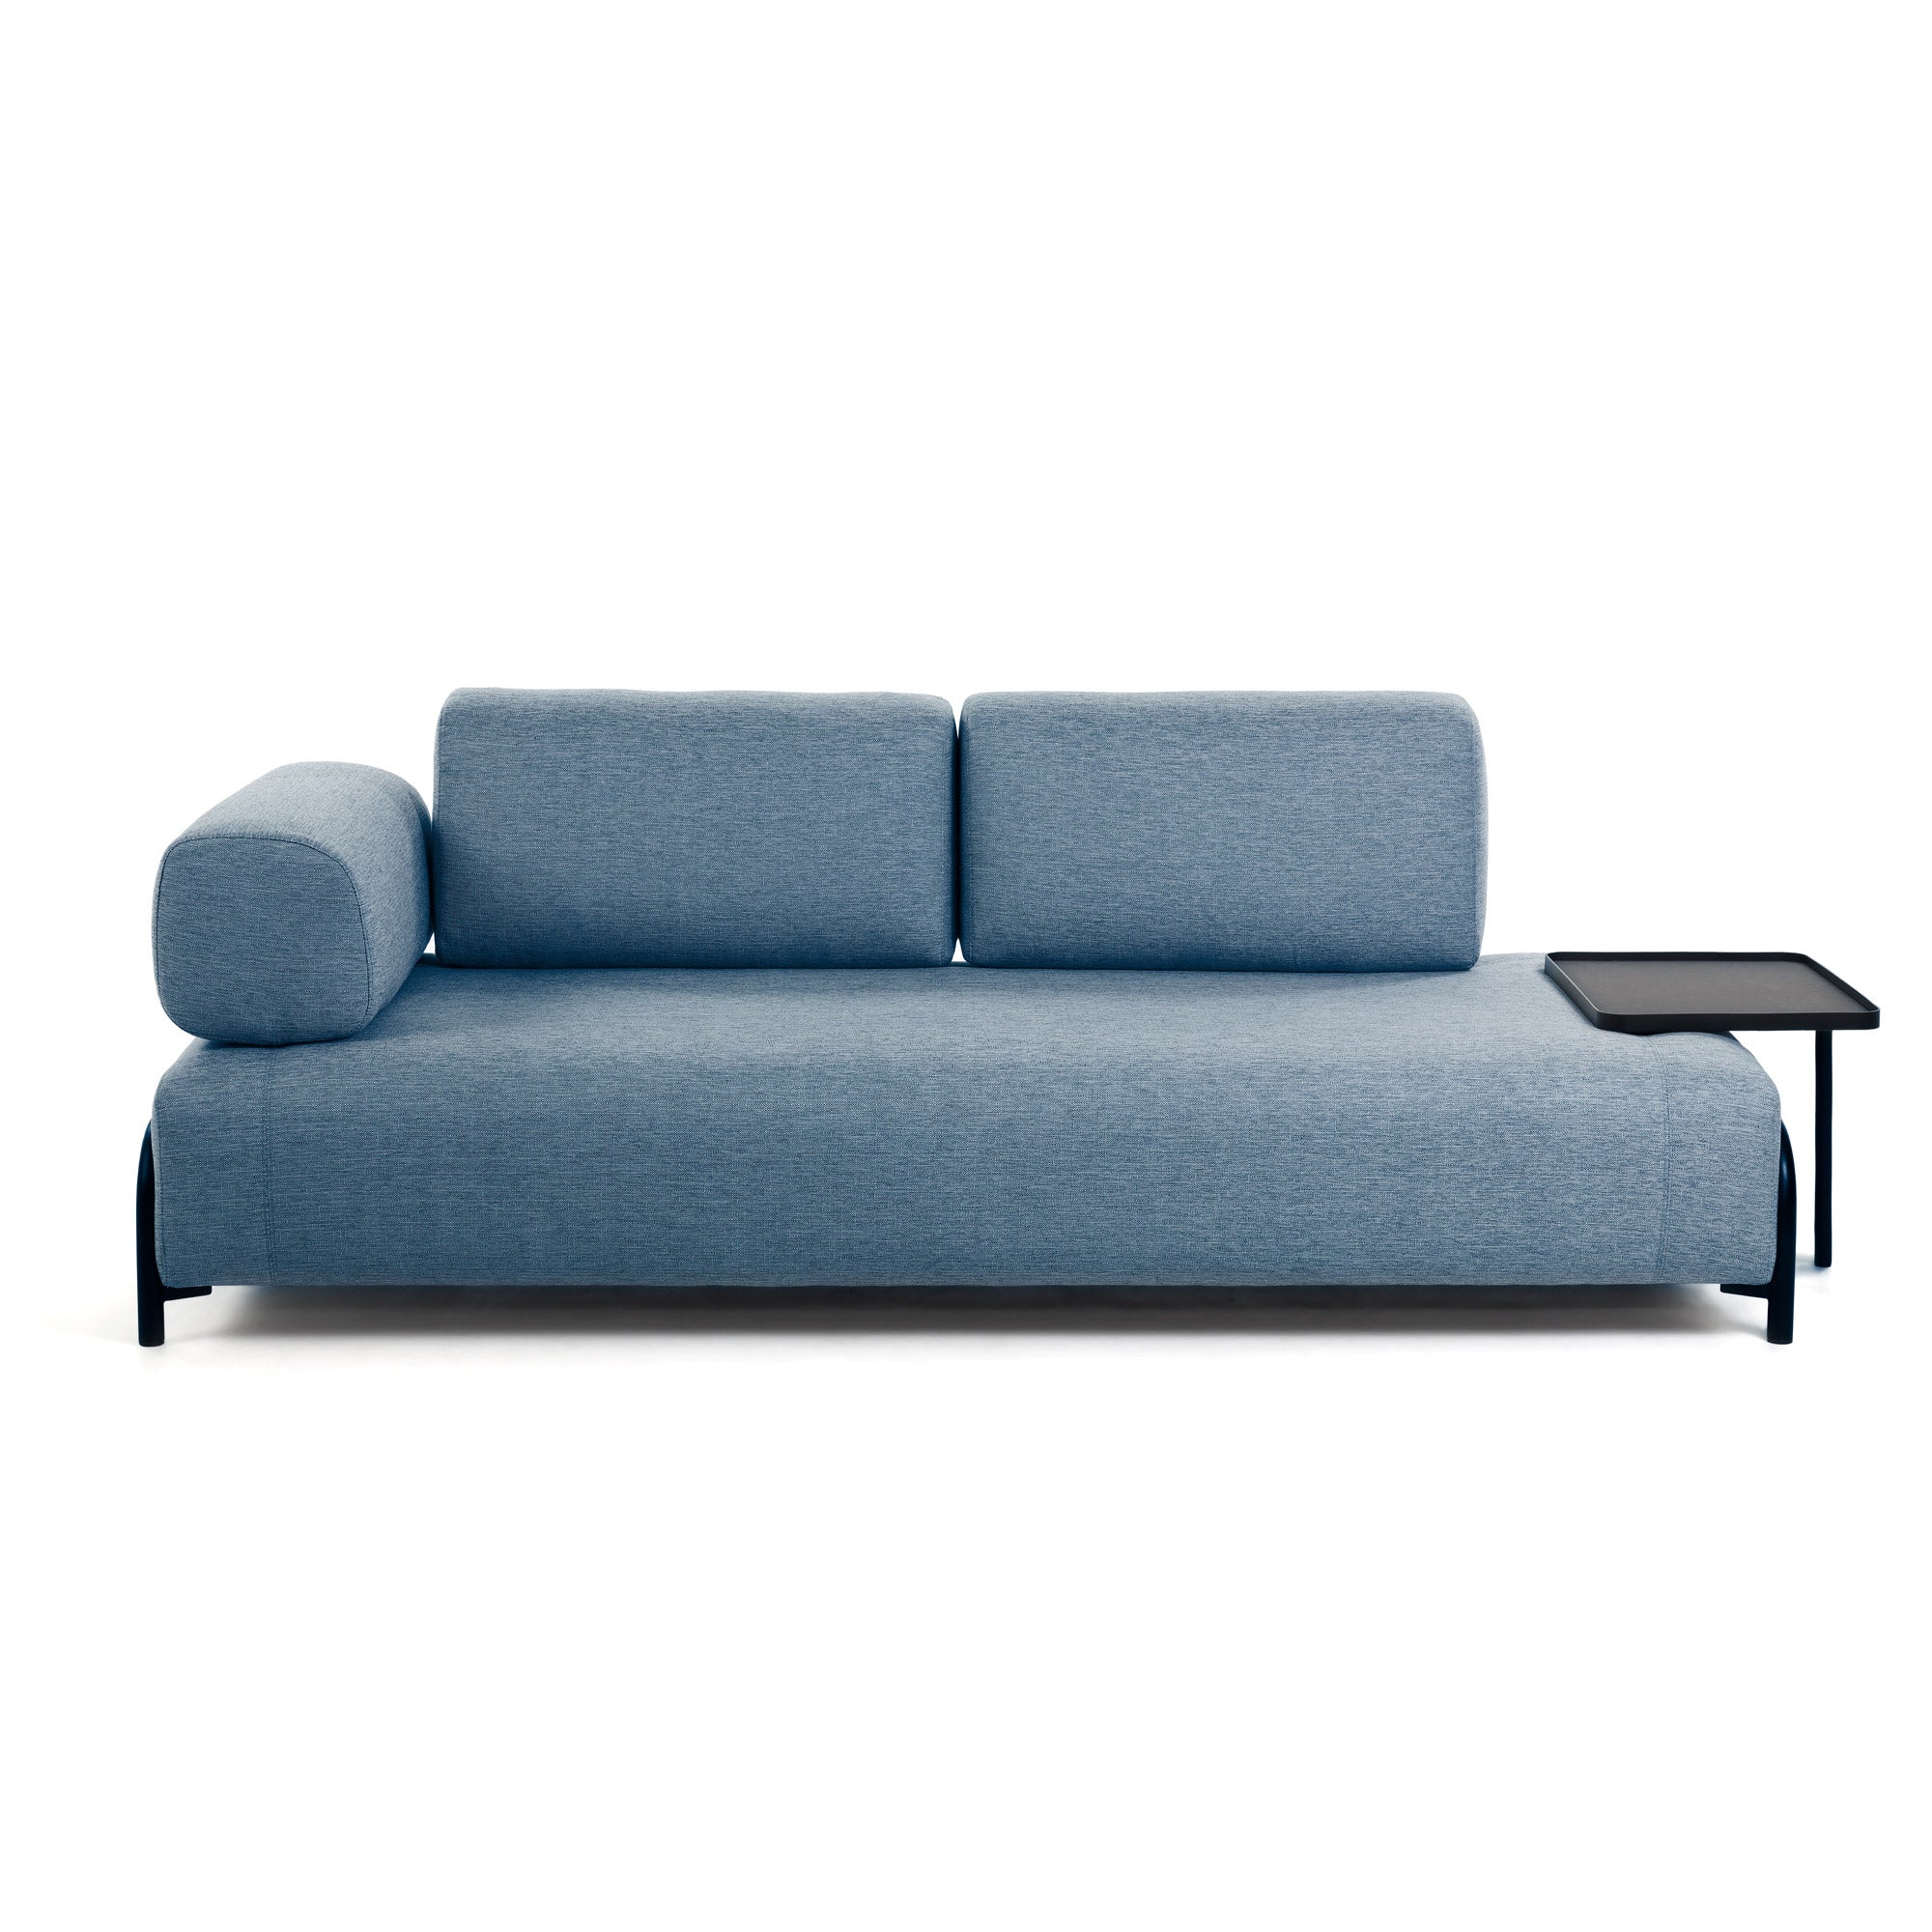 Compo 3 személyes kanapé kék színben, 232 cm